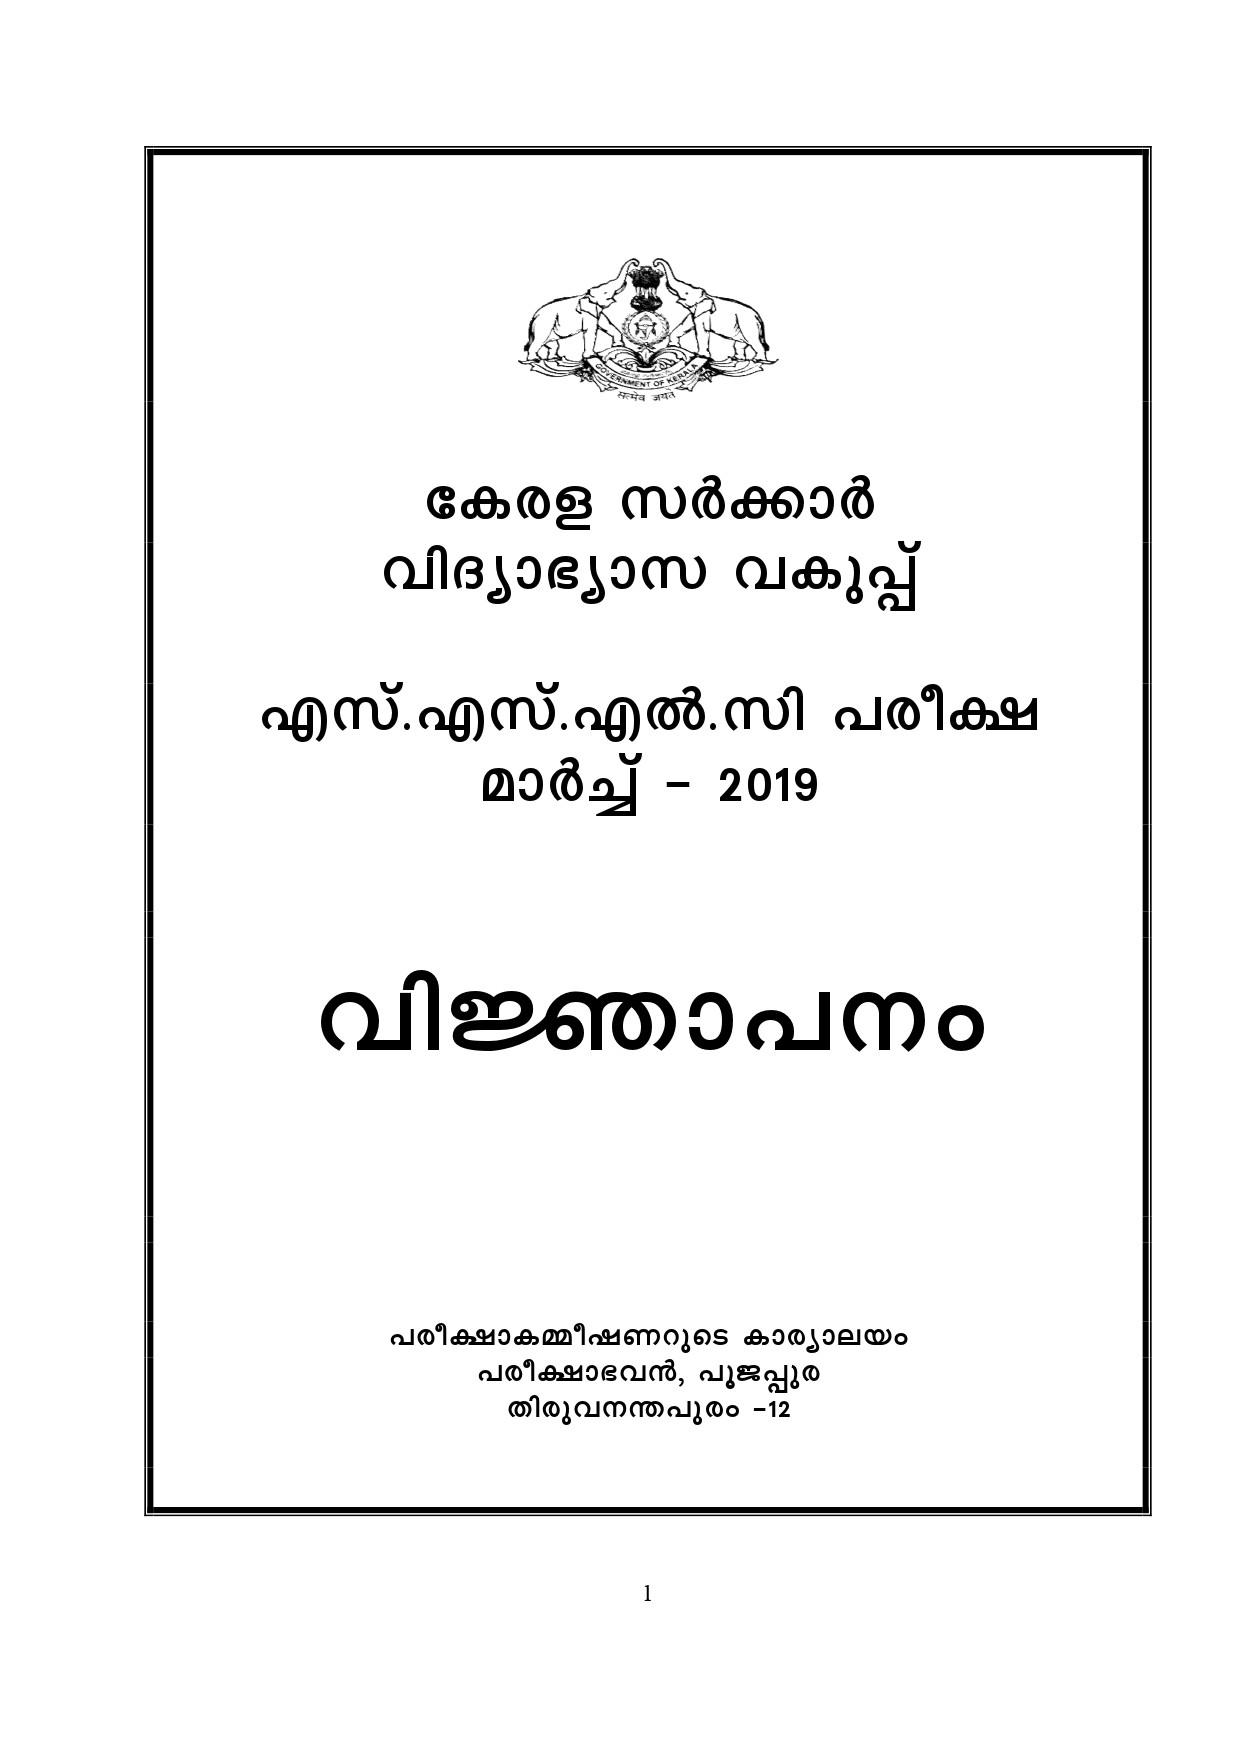 Kerala SSLC Exam Result 2019 - Notification Image 1